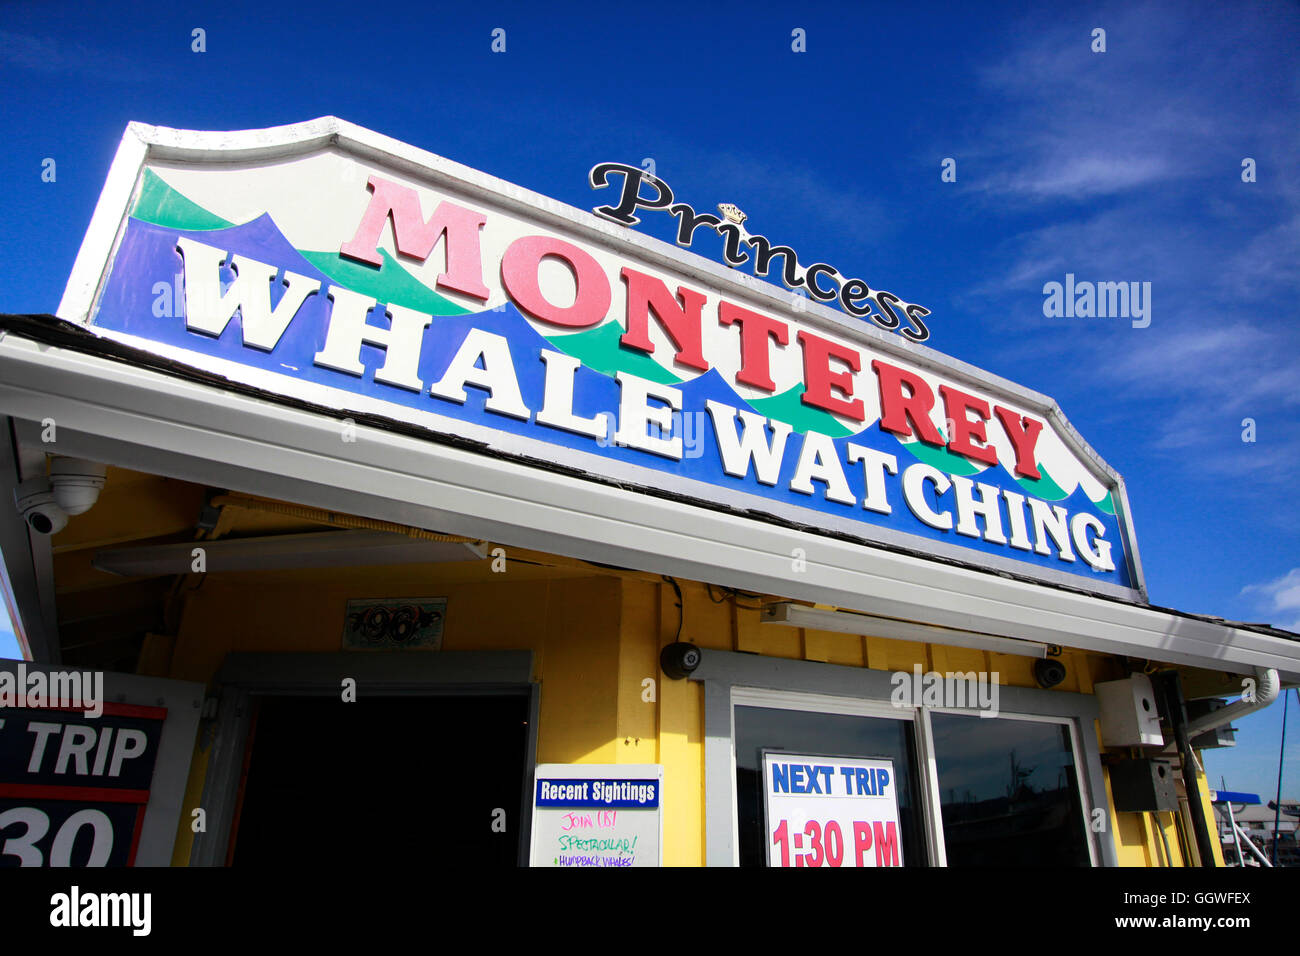 MONTEREY WHALE WATCHING on FISHERMAN'S WHARF - MONTEREY, CALIFORNIA Stock Photo